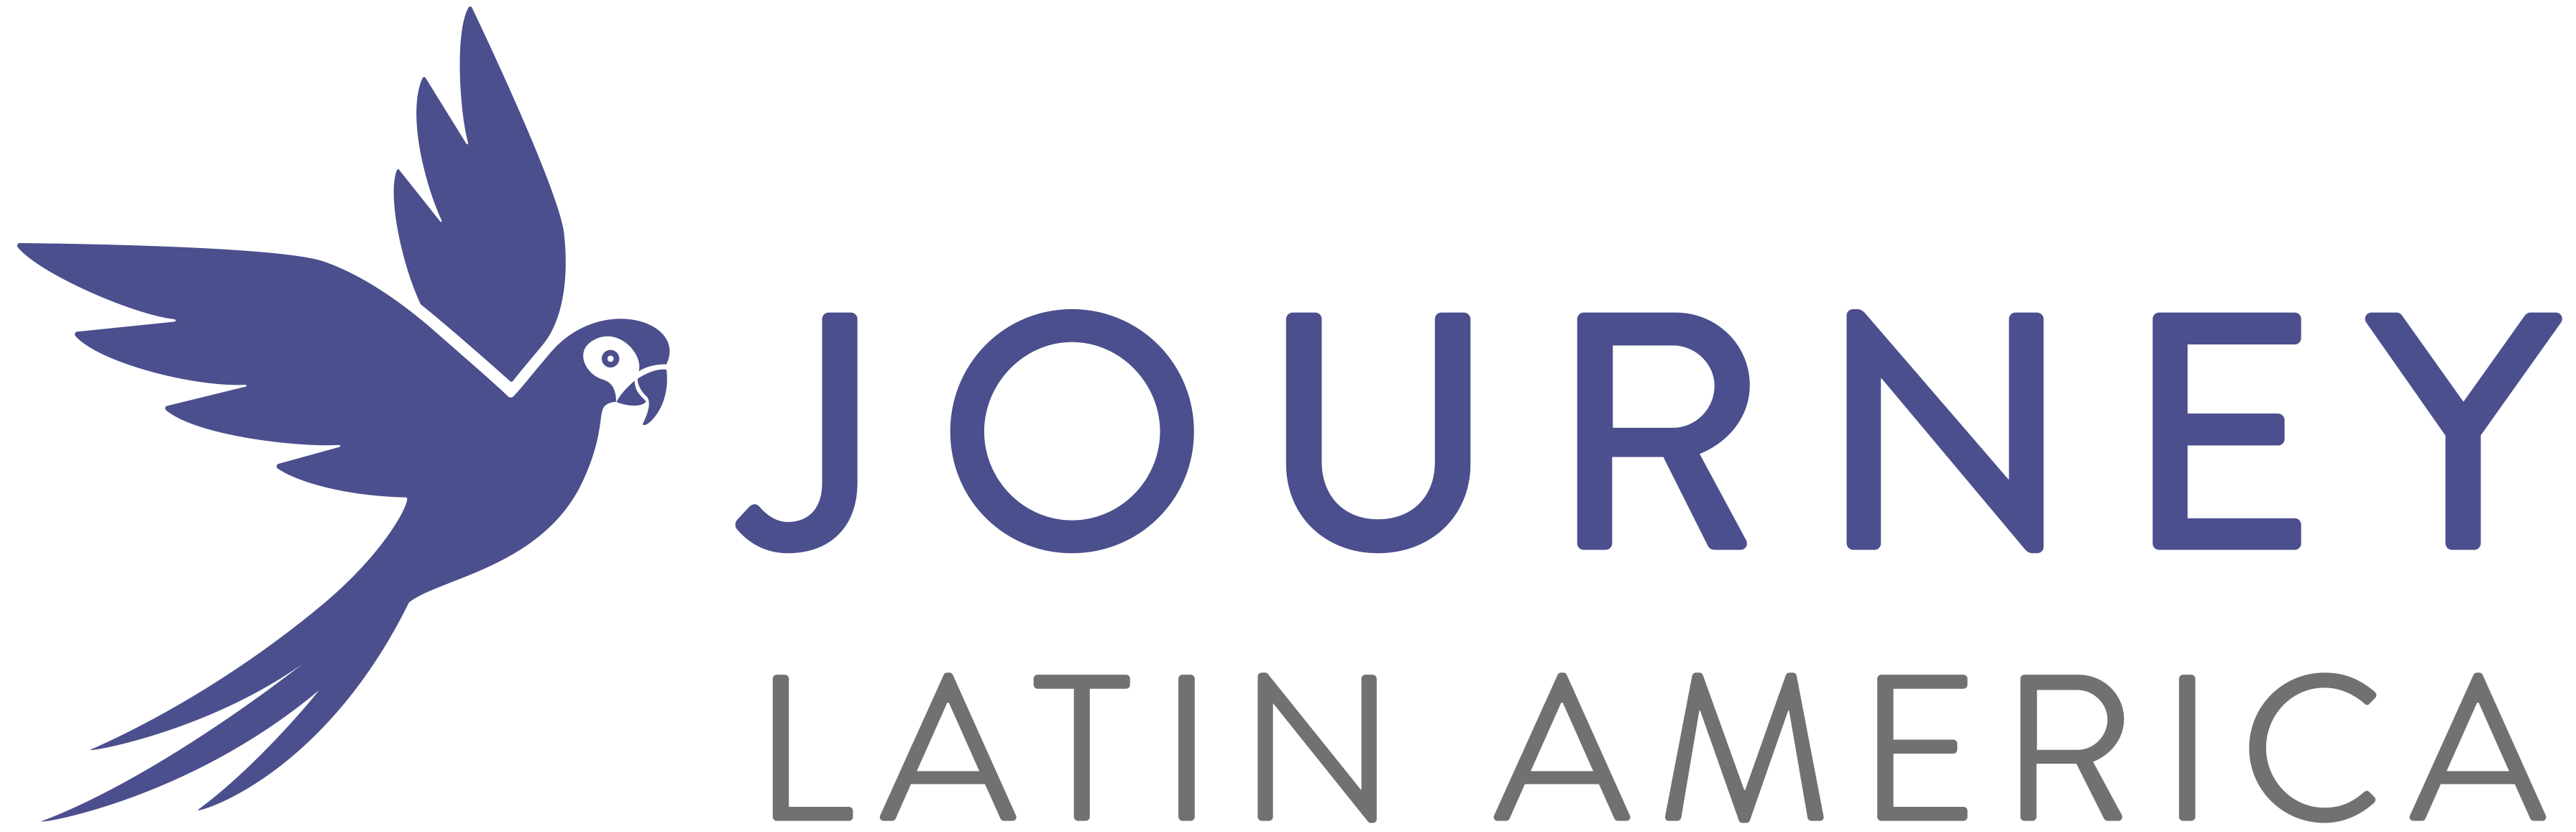 logo for Journey Latin America